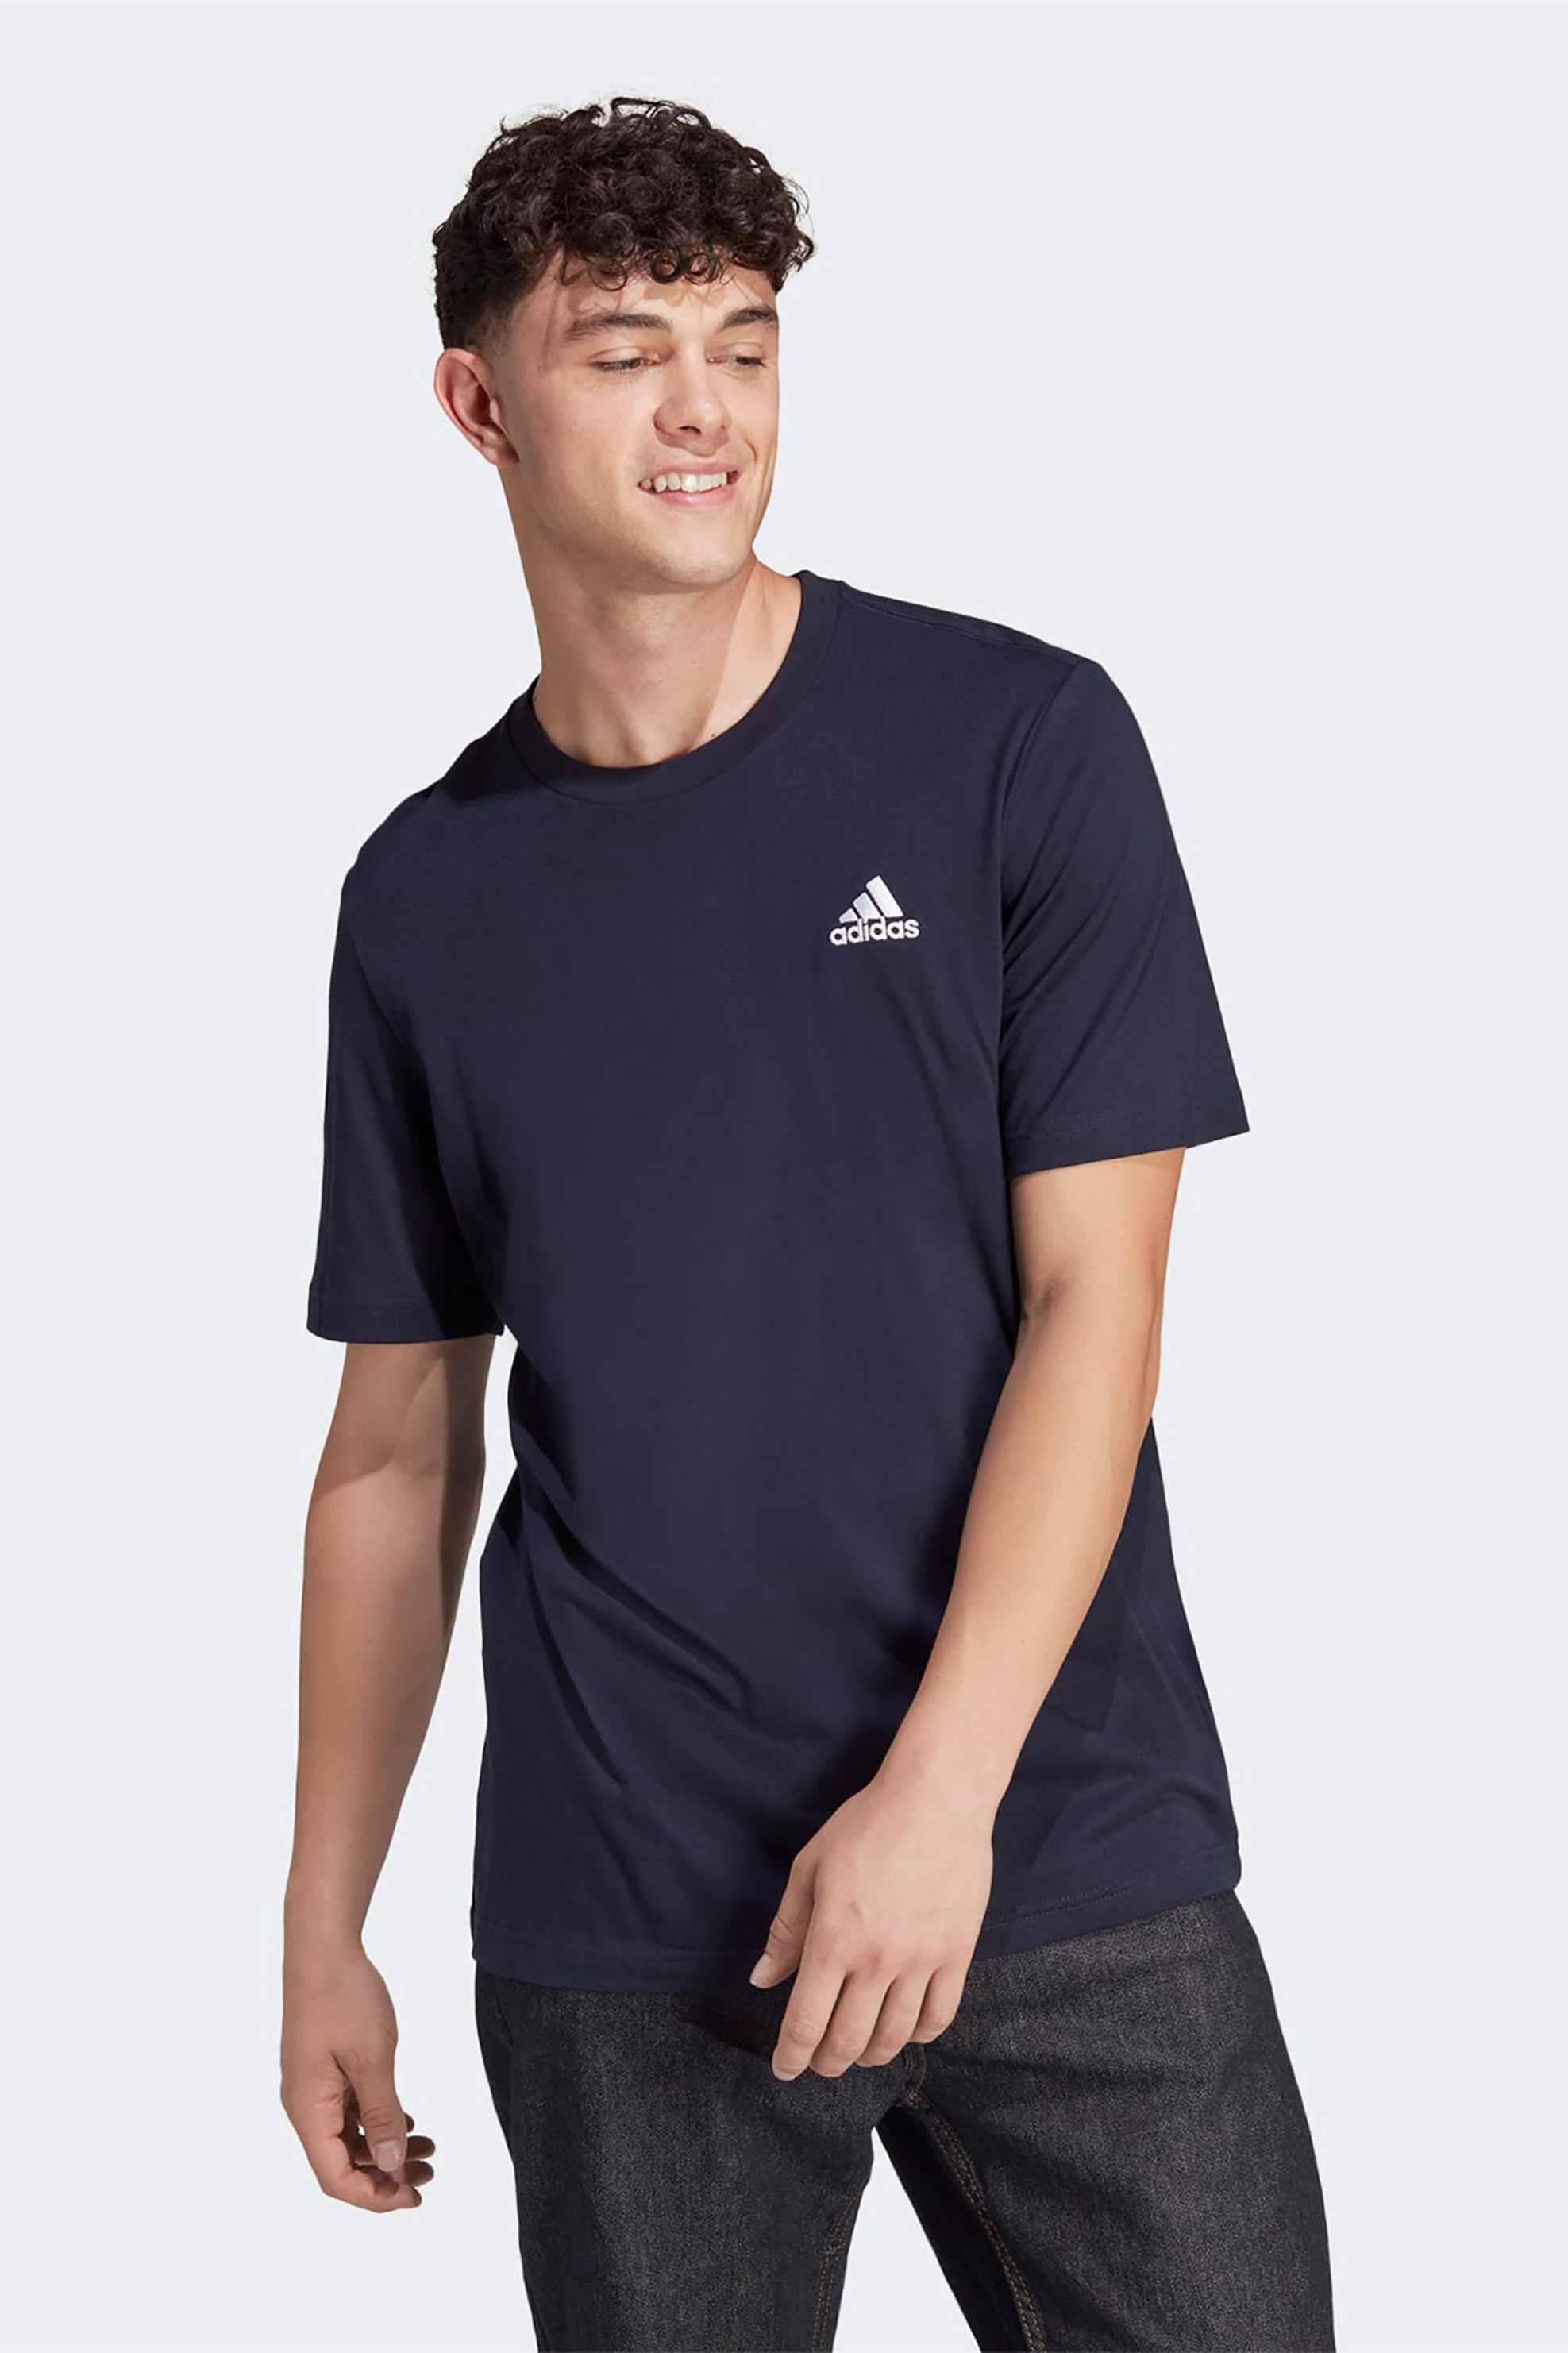 Ανδρική Μόδα > Ανδρικά Αθλητικά > Ανδρικά Αθλητικά Ρούχα > Αθλητικές Μπλούζες > Ανδρικά Αθλητικά T-Shirts Adidas ανδρικό T-shirt μονόχρωμο με κεντημένο contrast λογότυπο "M SL SJ T" - HY3404 Σκούρο Μπλε